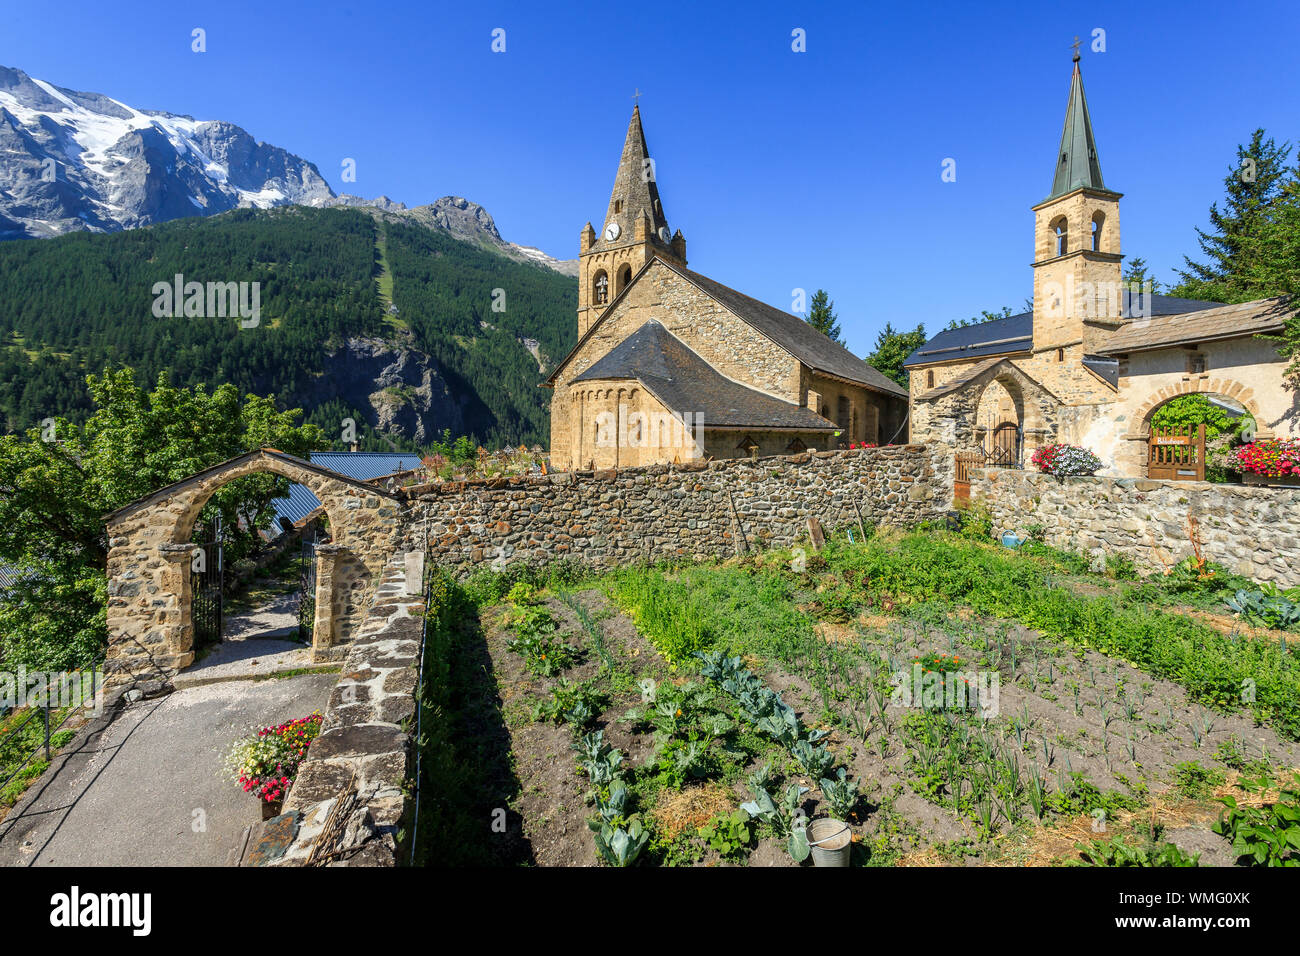 France, Hautes Alpes, Ecrins National Park, Oisans, La Grave, labelled the Most Beautiful Villages of France, Notre Dame de l’Assomption church and Pe Stock Photo